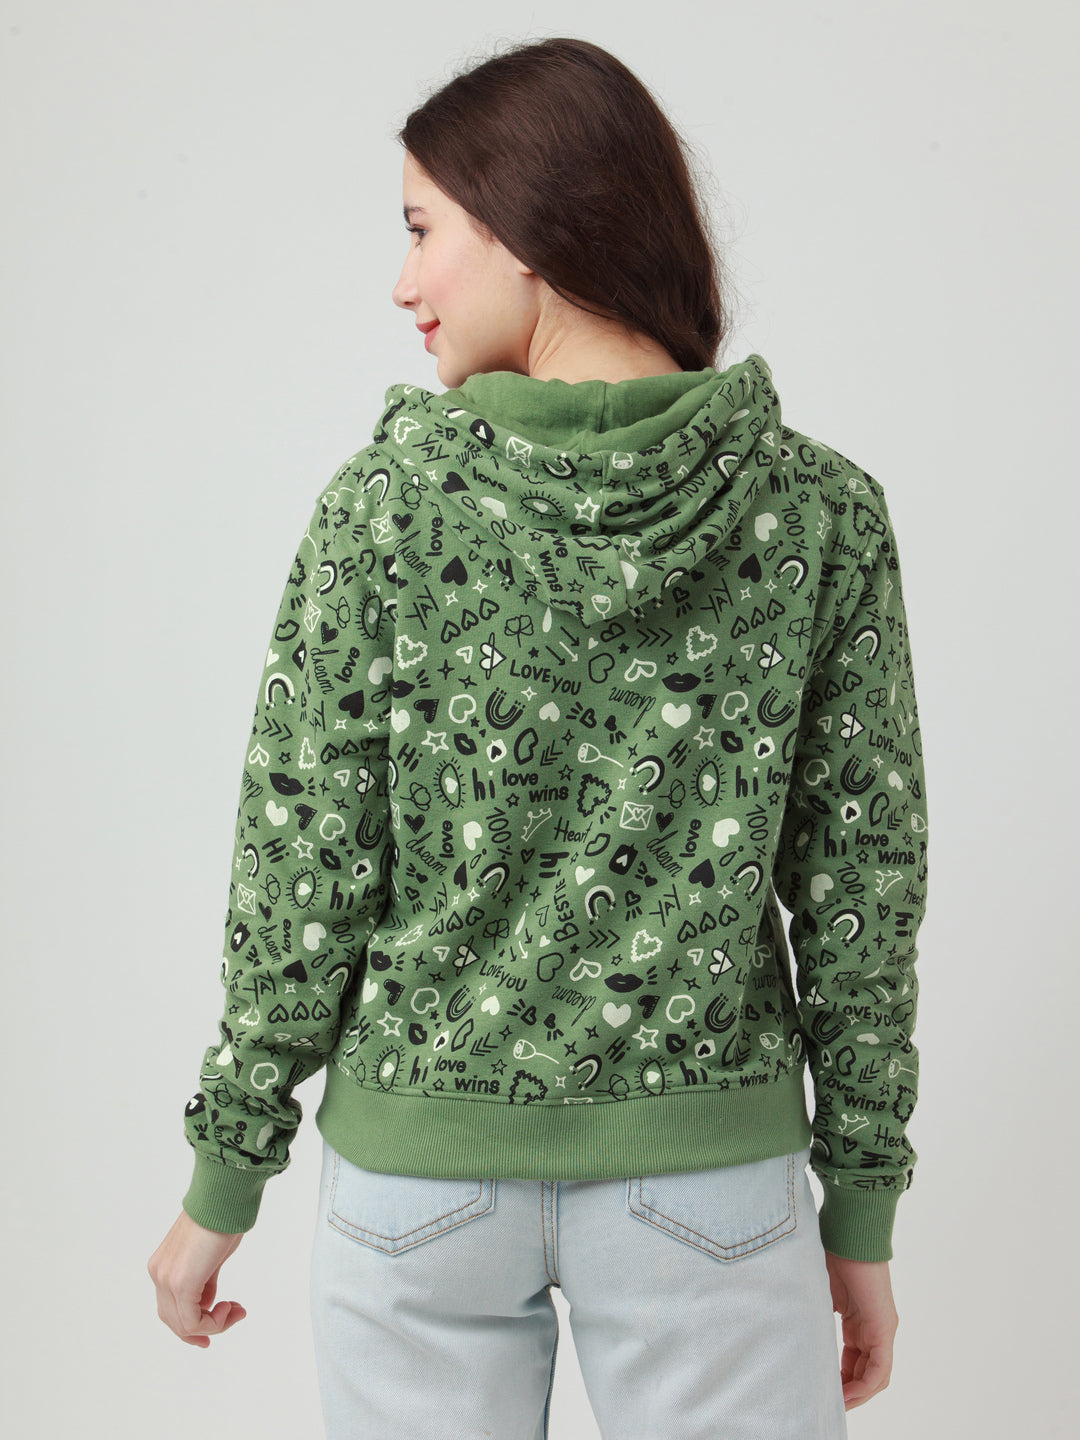 Green Printed Hoodie Sweatshirt For Women